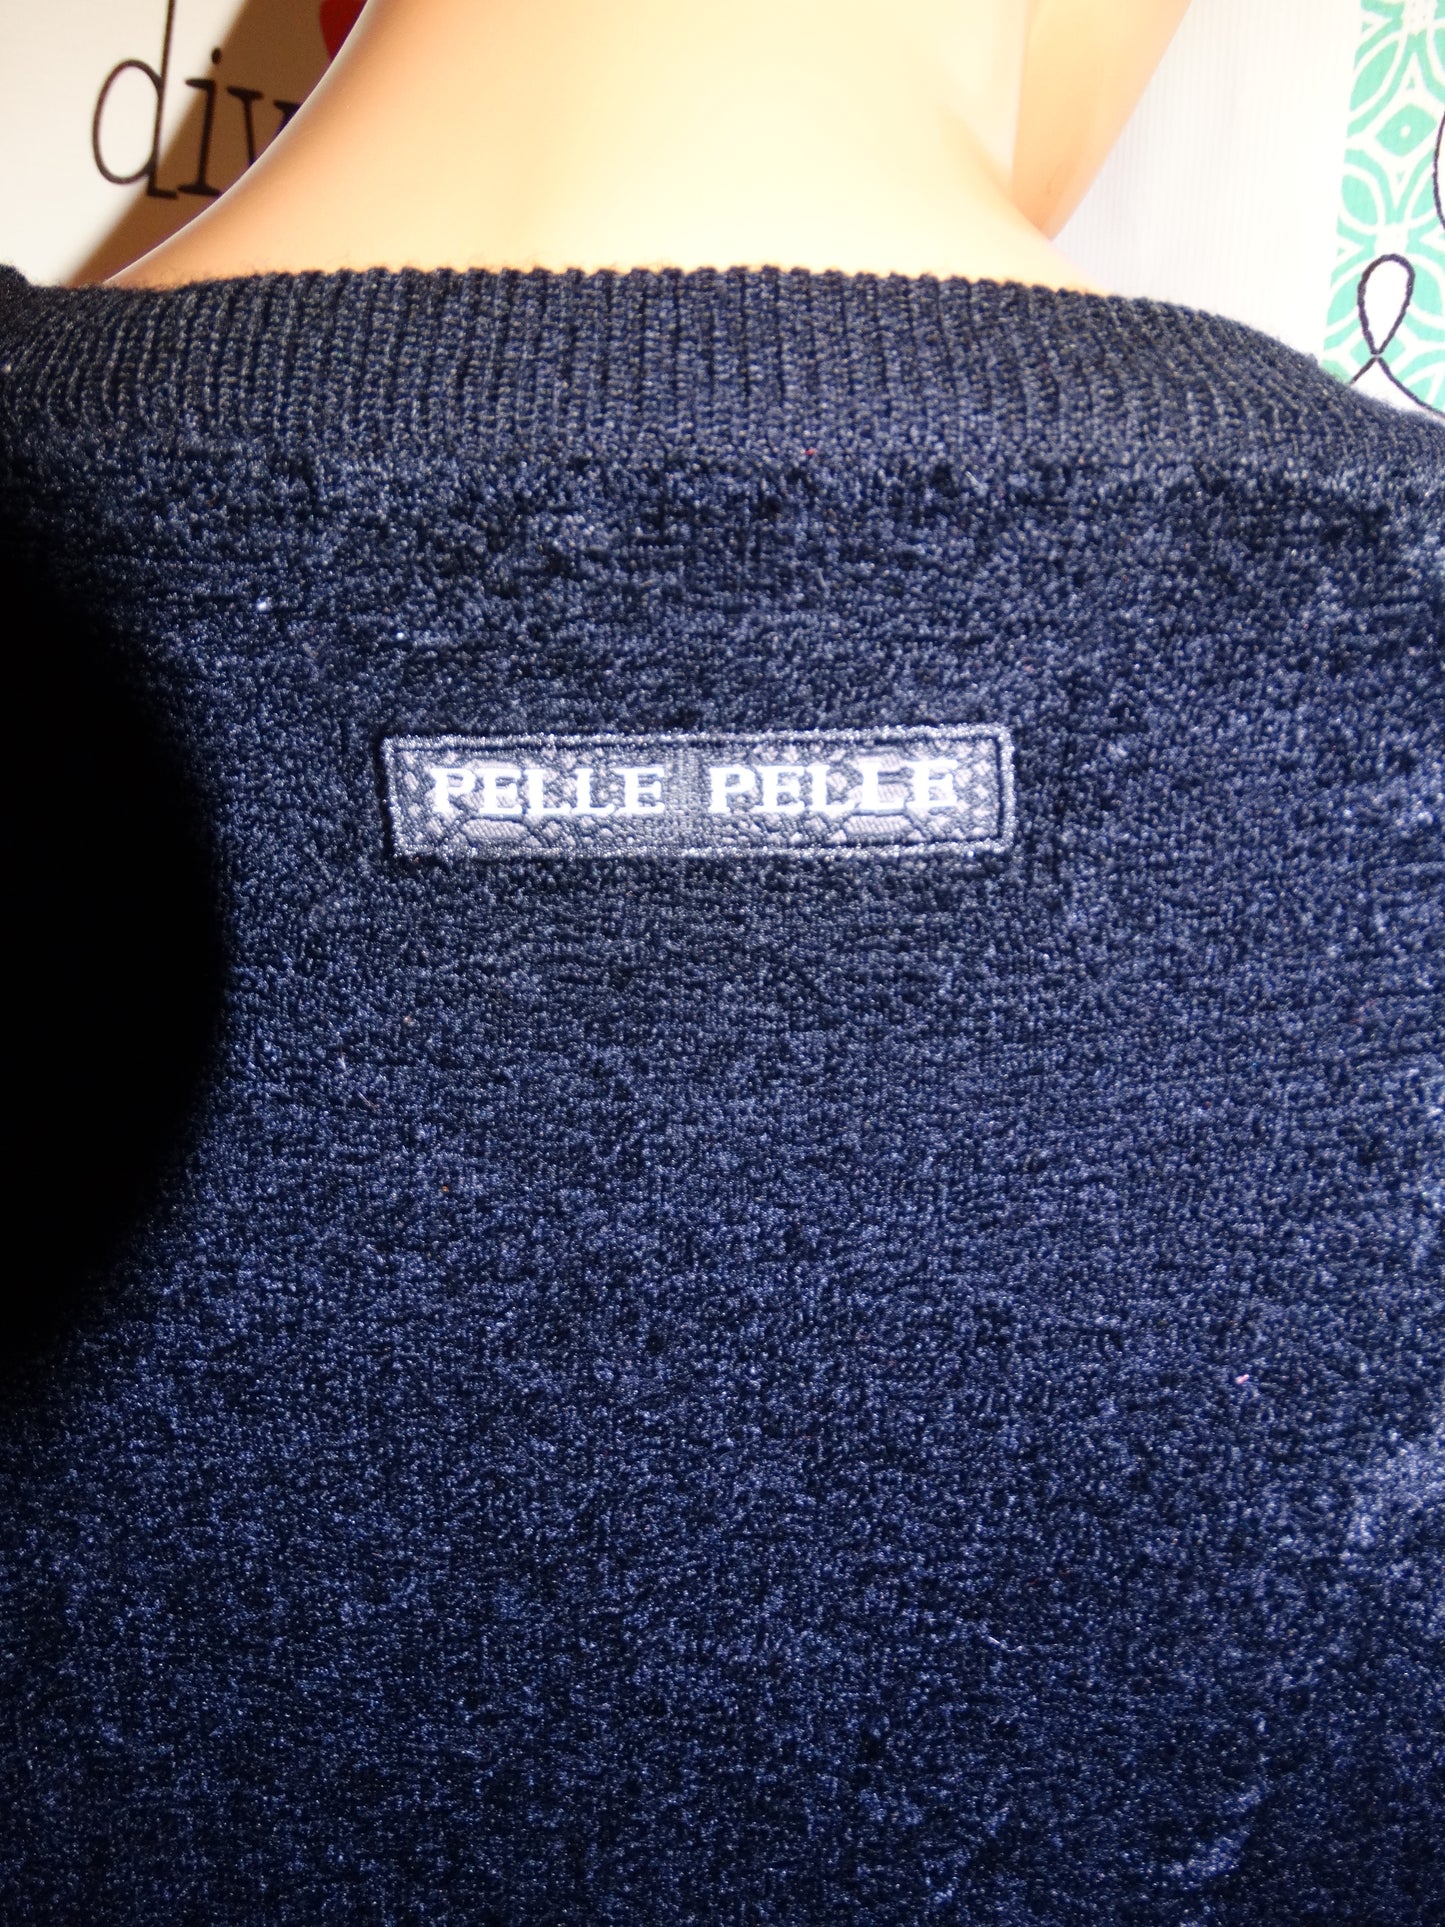 Vintage Pelle Pelle Black Lion Sweater Size 3x